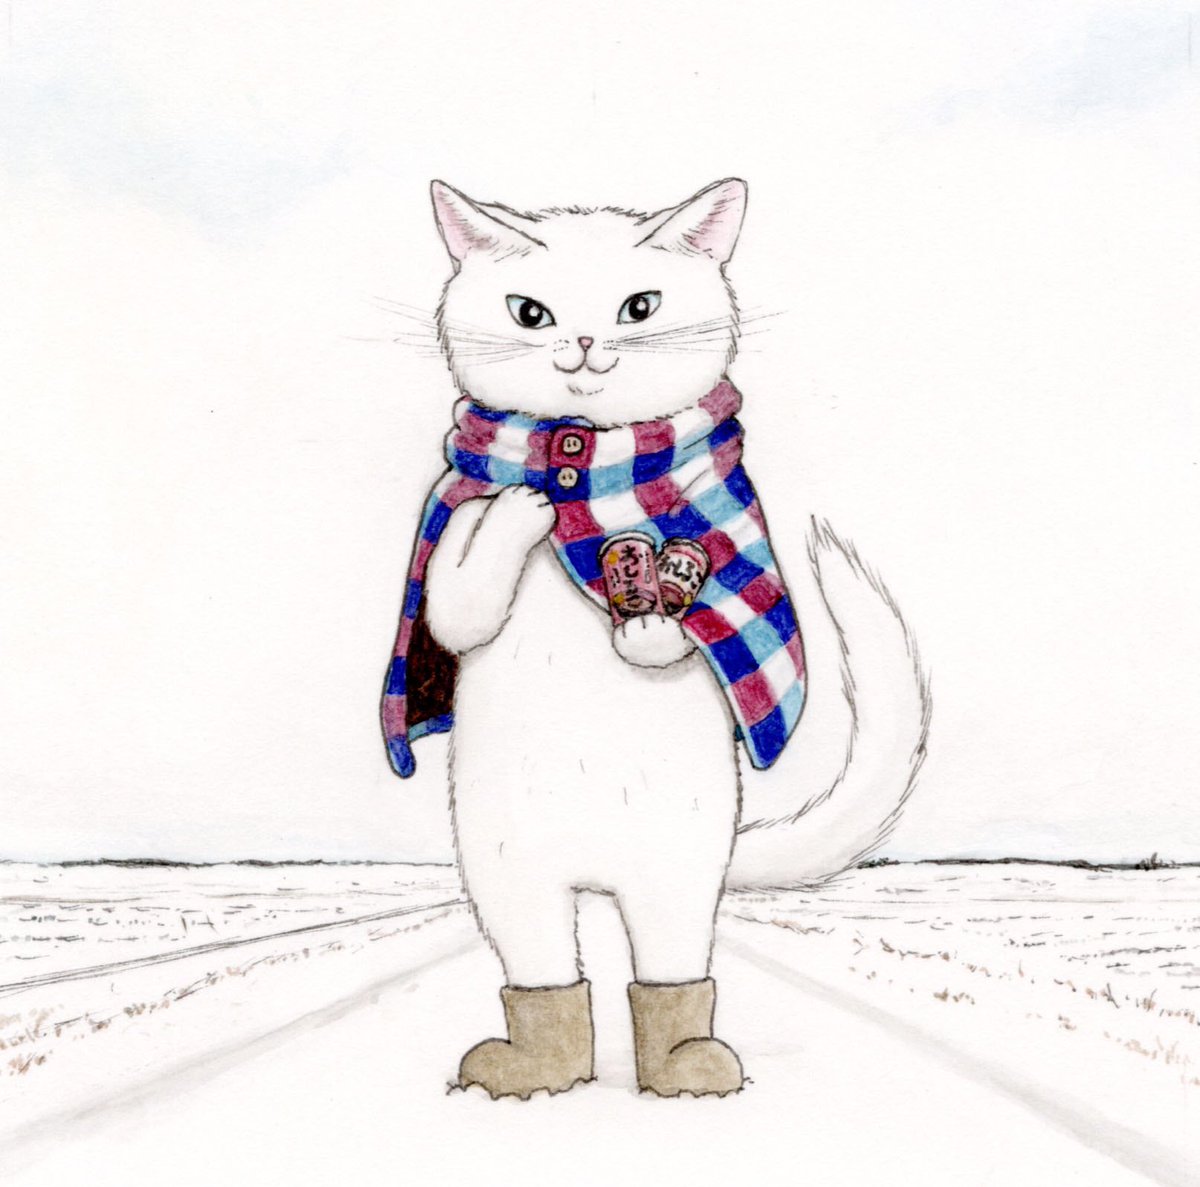 「『おしること彼氏猫』寒かったけんぬくいの買っちょいたわ好きな方、取ったらいいけん」|エルクポットの動物群像絵🐾のイラスト